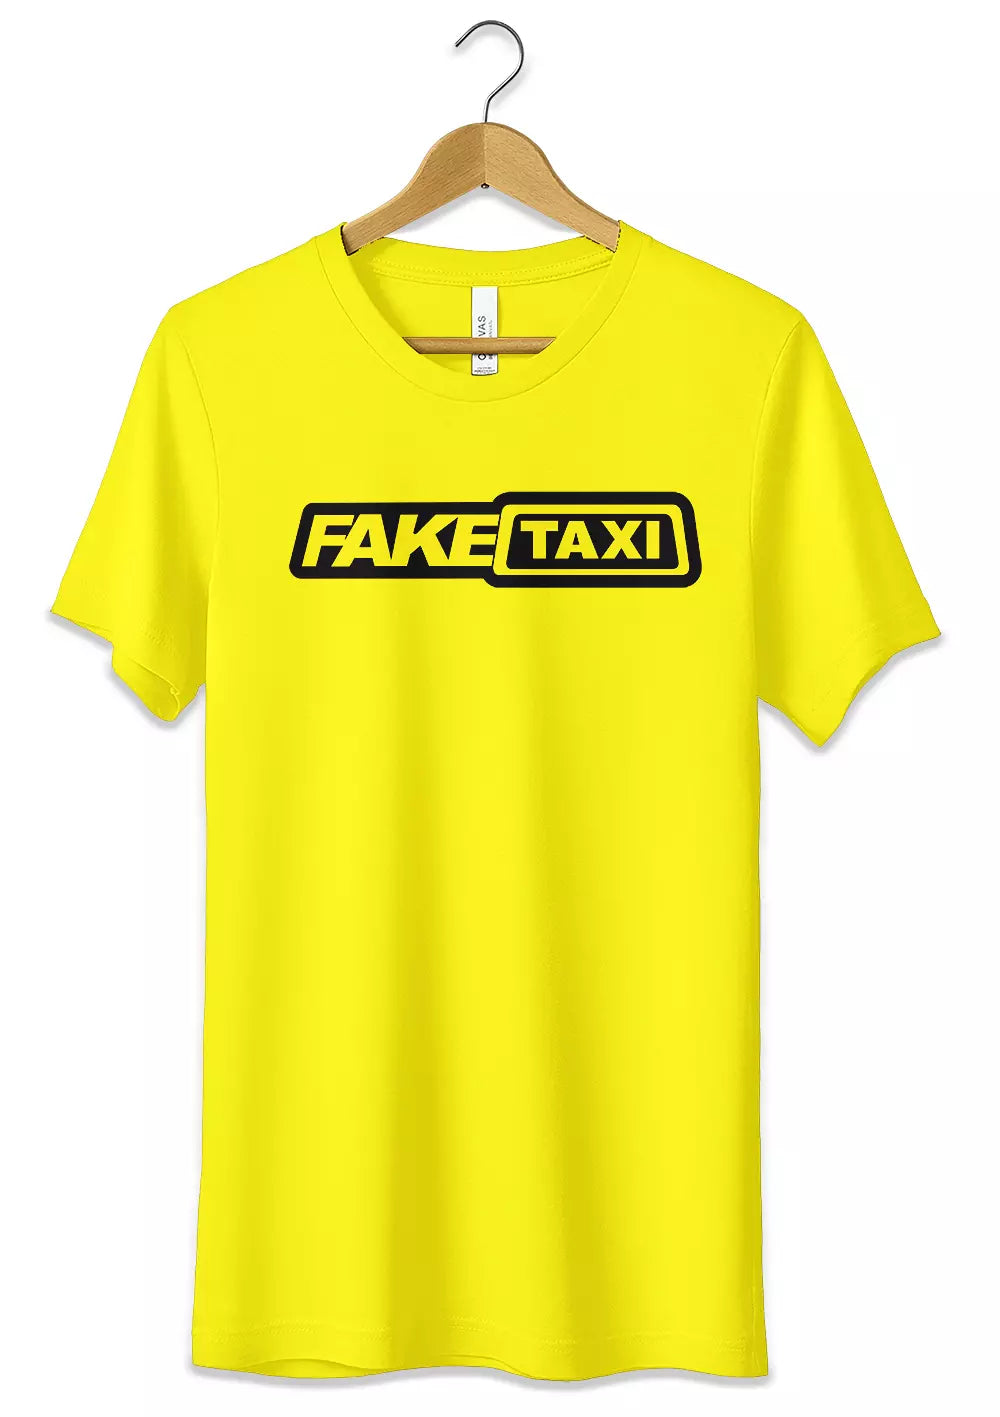 T-Shirt Funny Fake Taxi Maglietta 100% Cotone Idea Regalo, CmrDesignStore, T-Shirt, t-shirt-funny-fake-taxi-stampa-fluo-maglietta-100-cotone-idea-regalo, CmrDesignStore